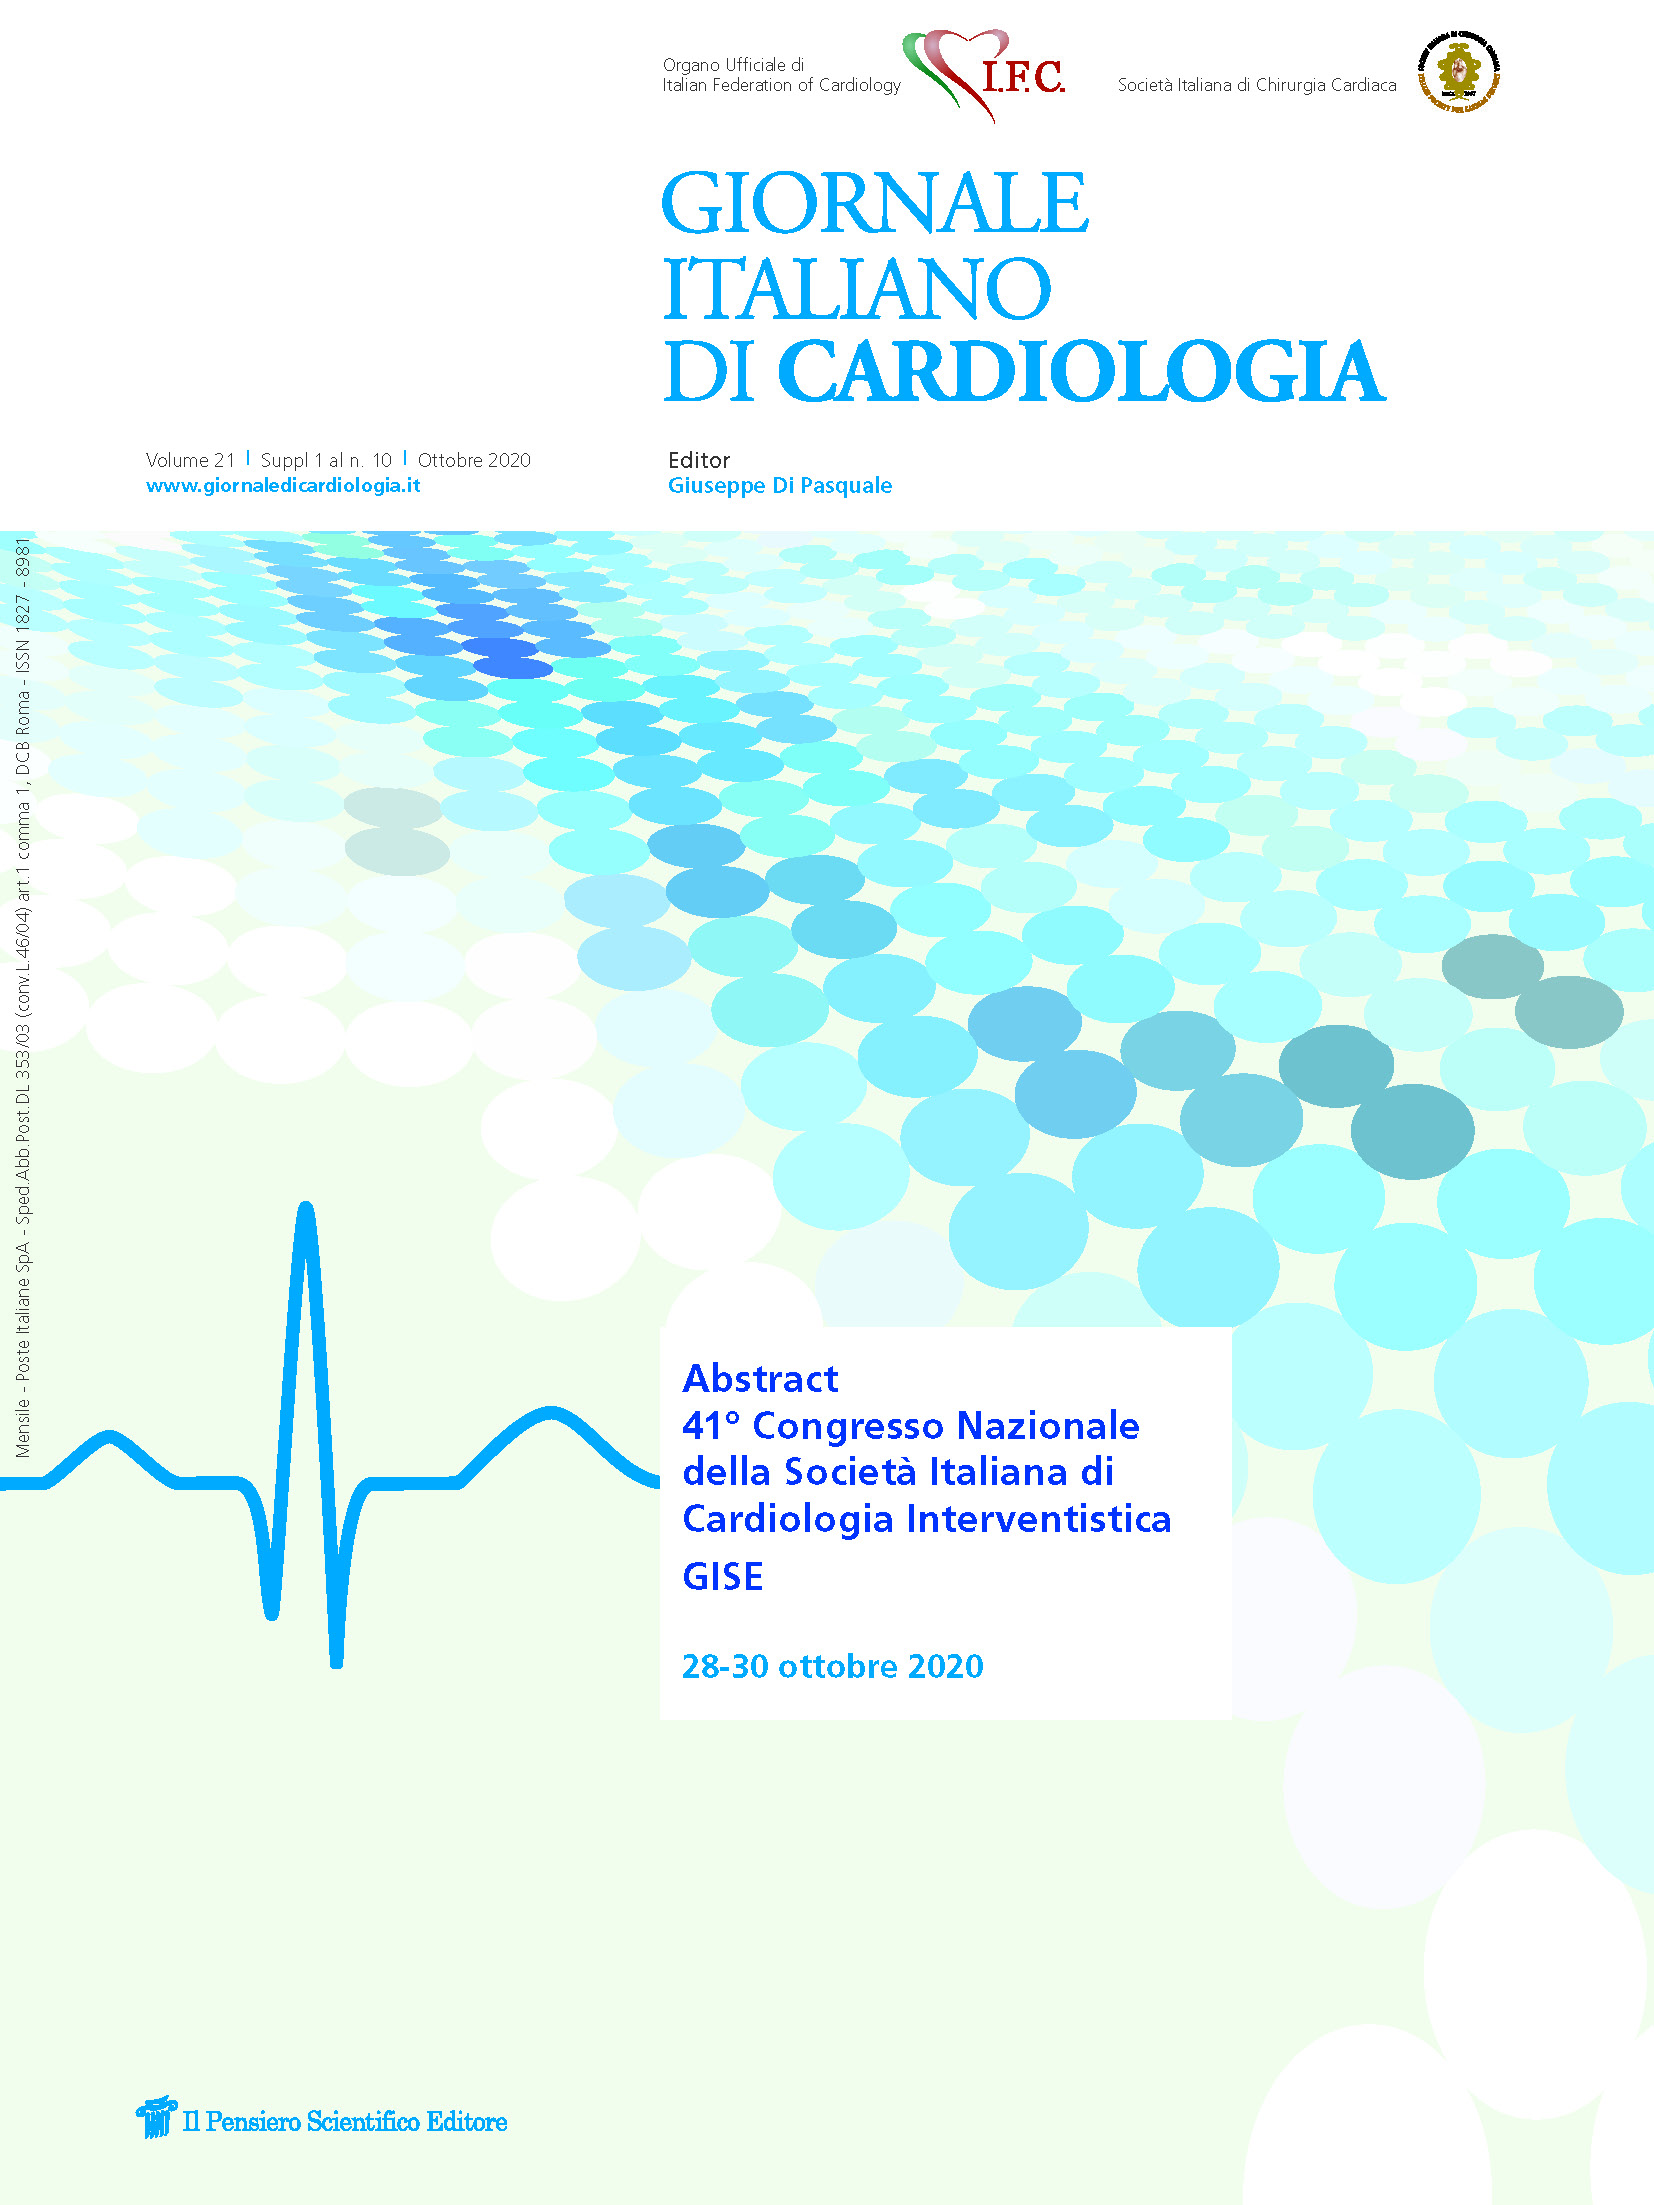 2020 Vol. 21 Suppl. 1 al N. 10 OttobreAbstract 41° Congresso Nazionale della Società Italiana di Cardiologia Interventistica - GISE